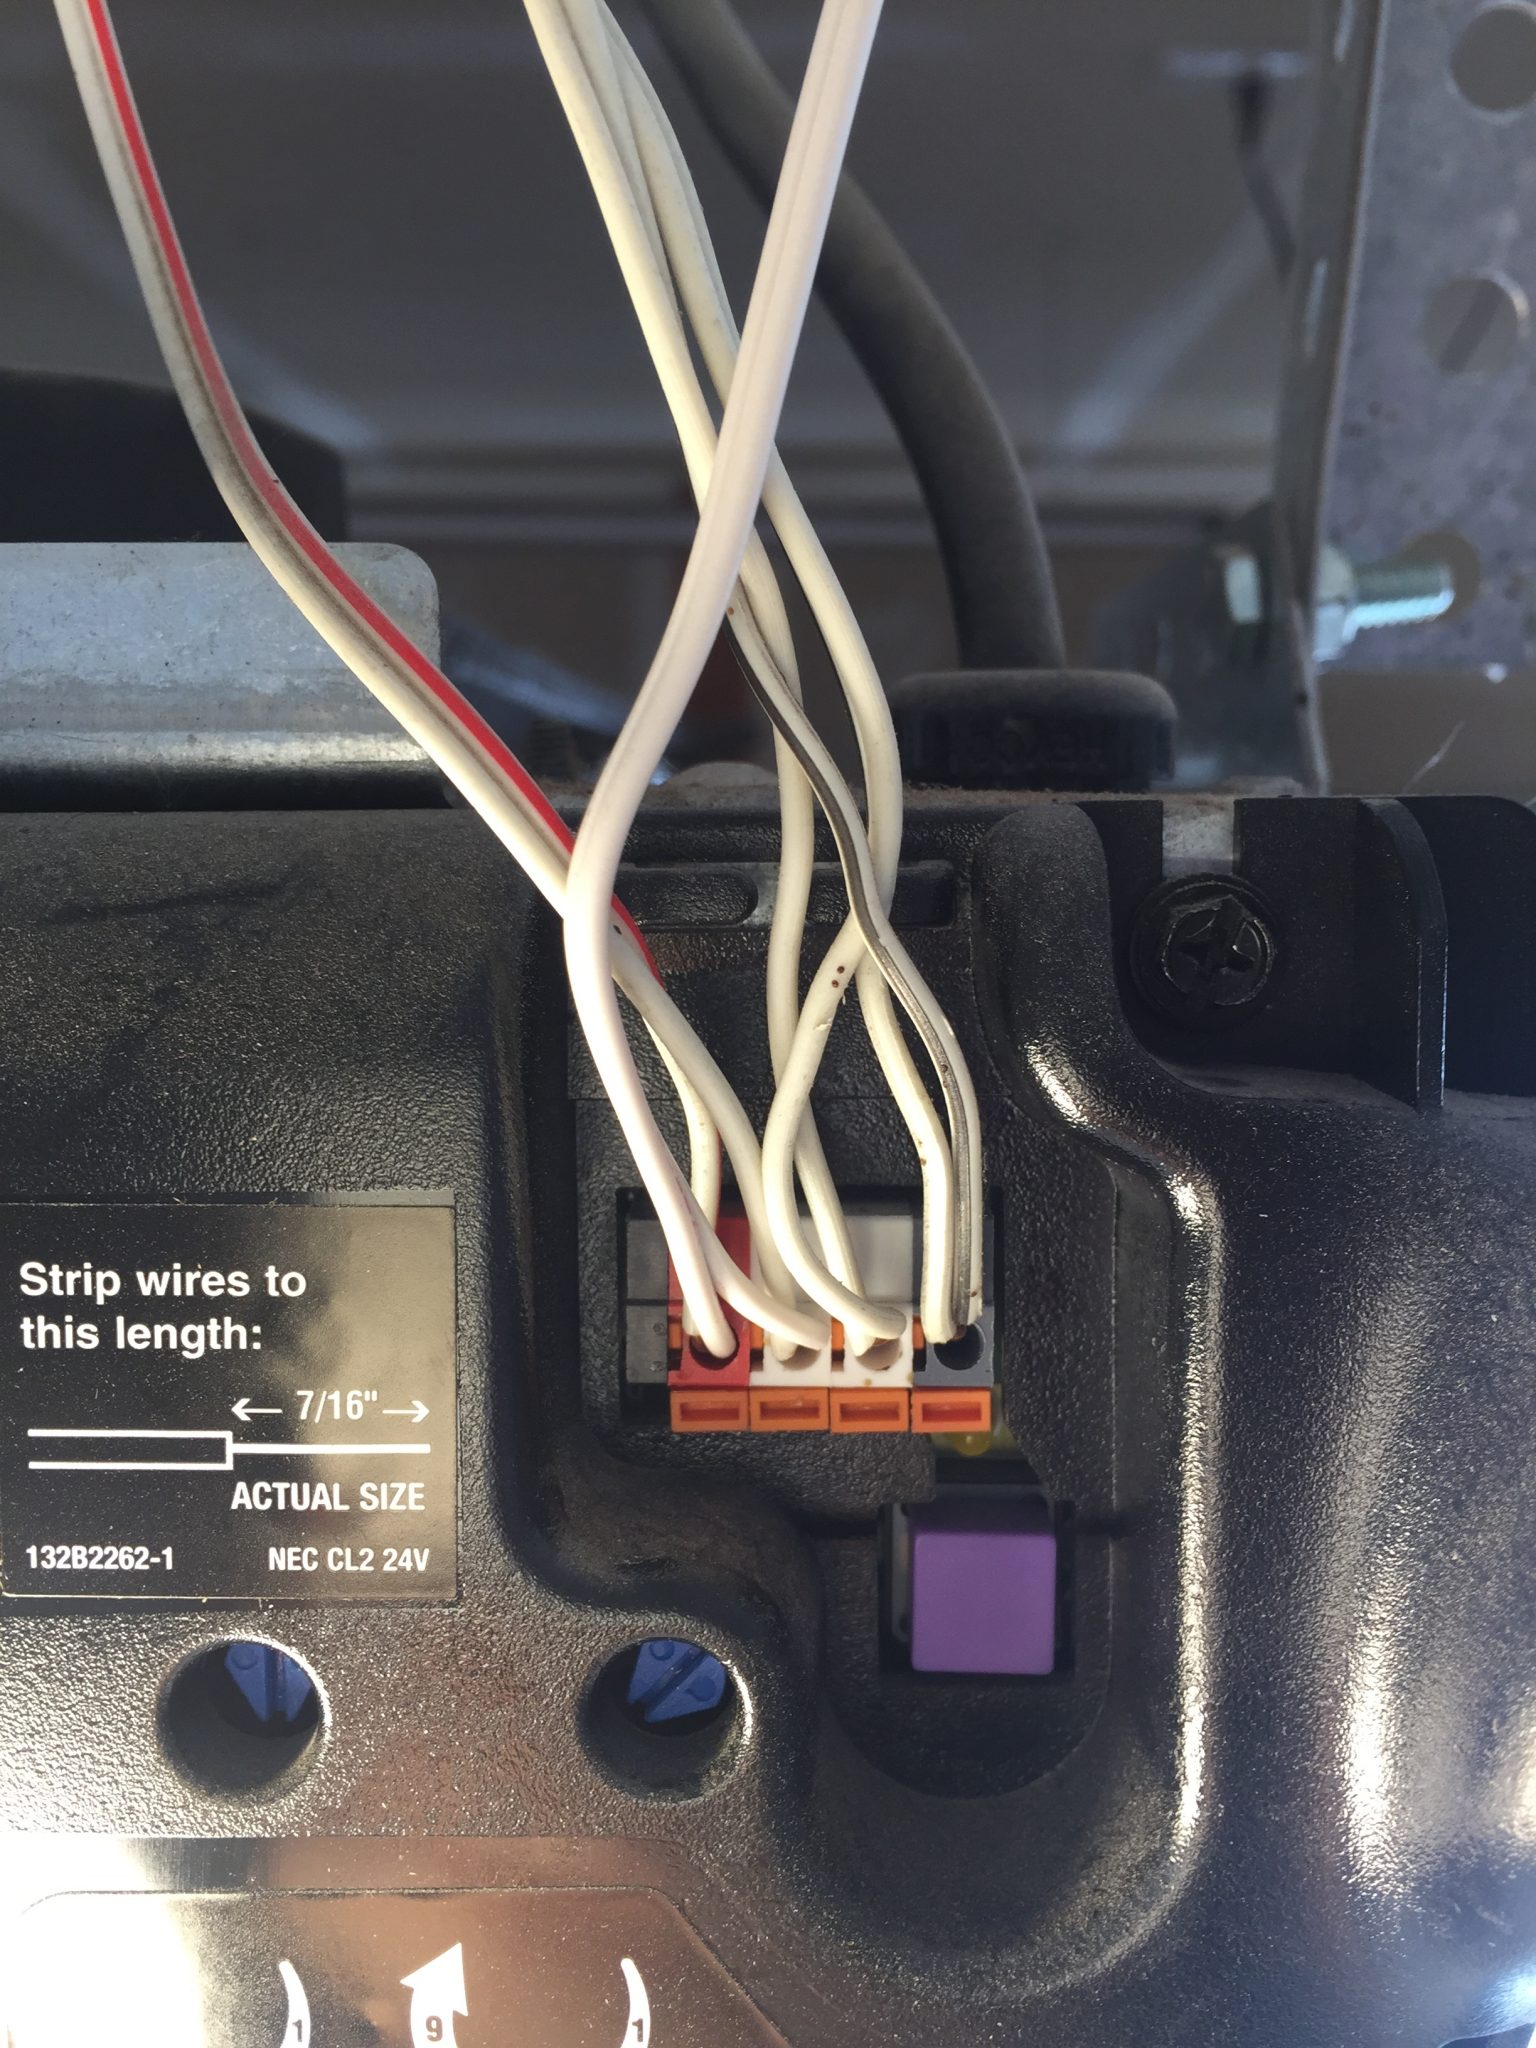 How To Install The Adt Pulse Garage Door Controller Gd00z 2